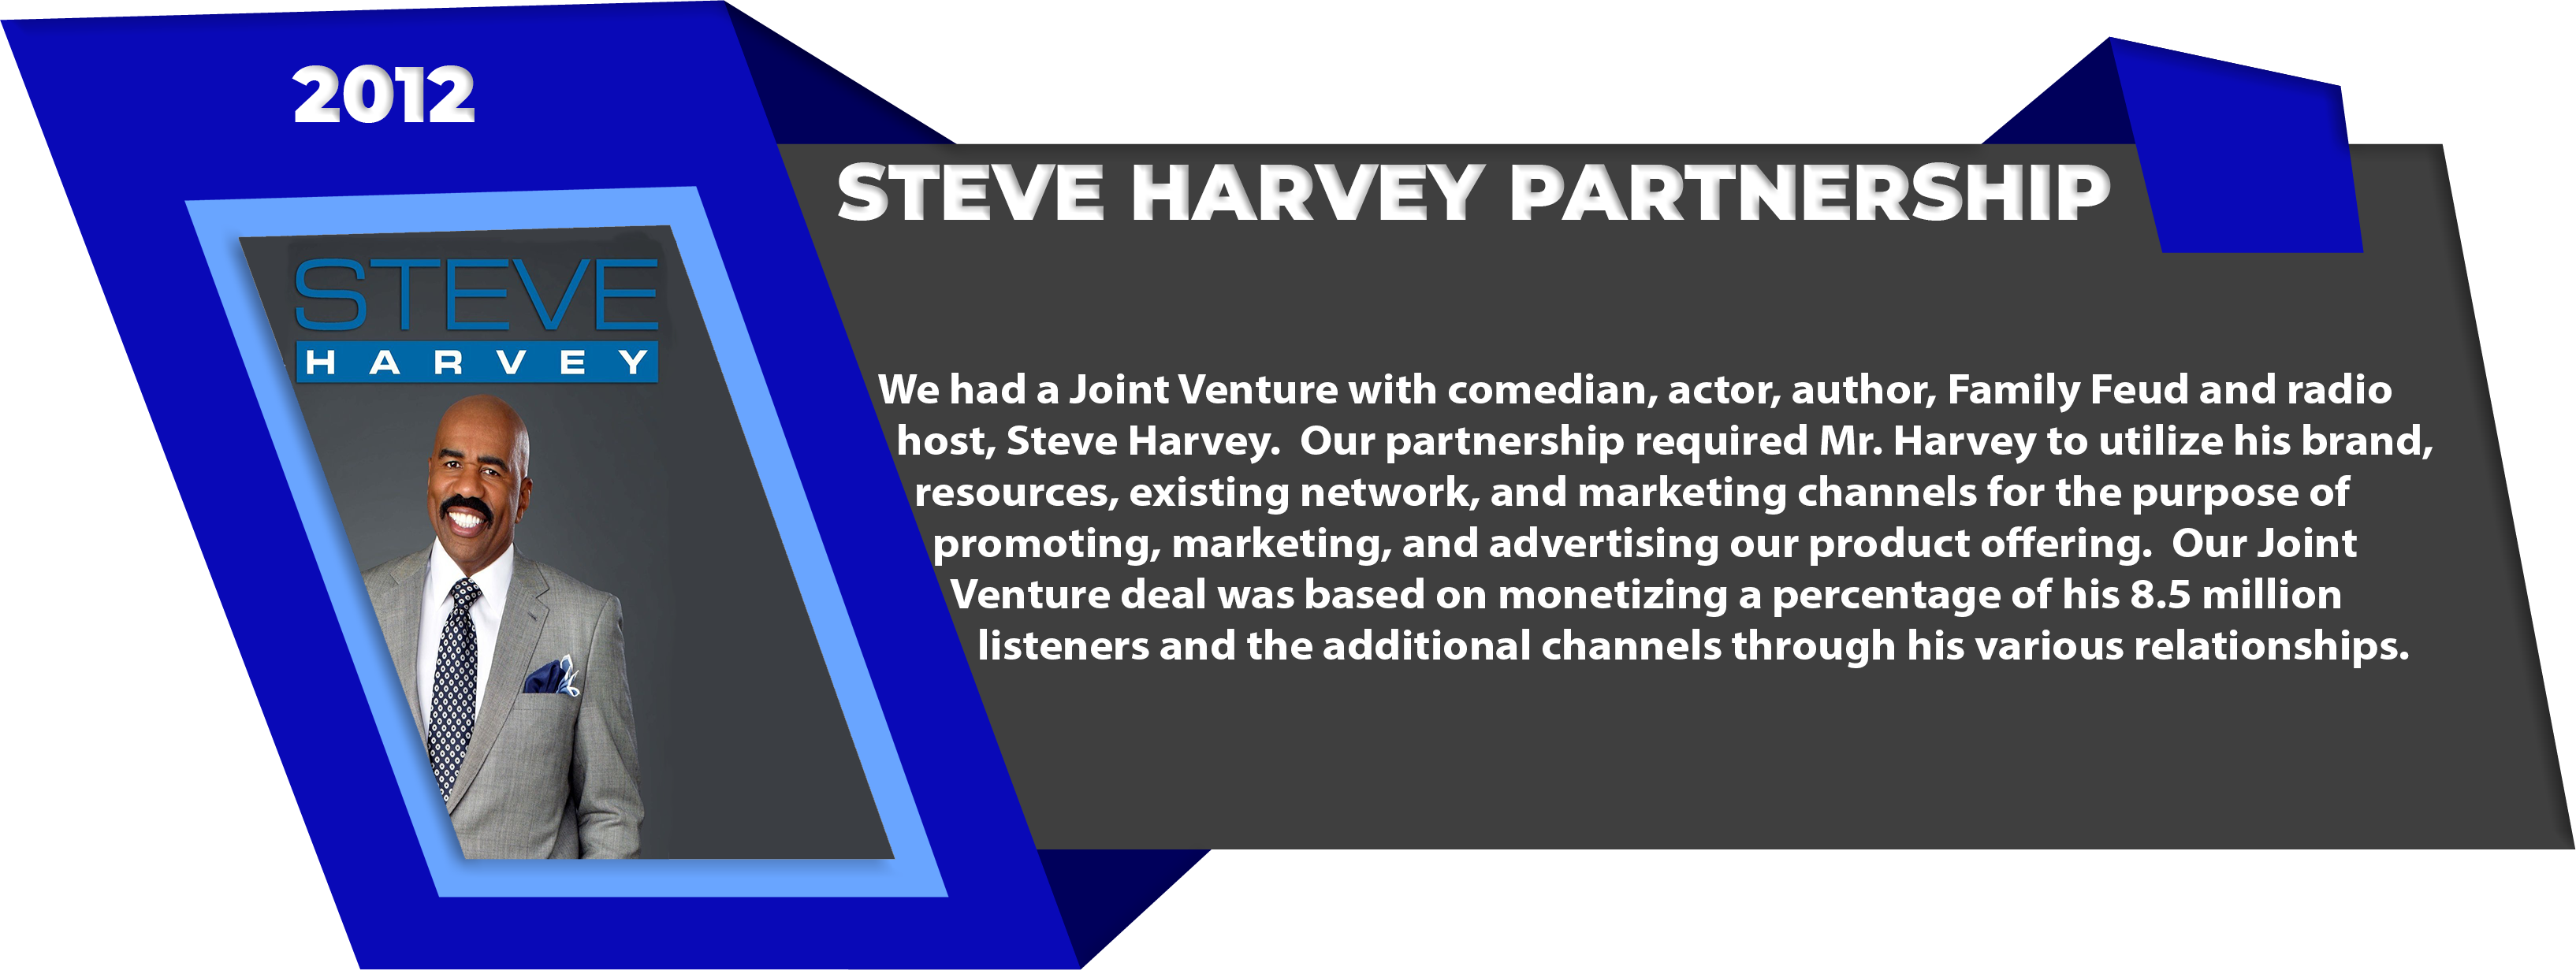 Steve-Harvey-Partnership-2012-1